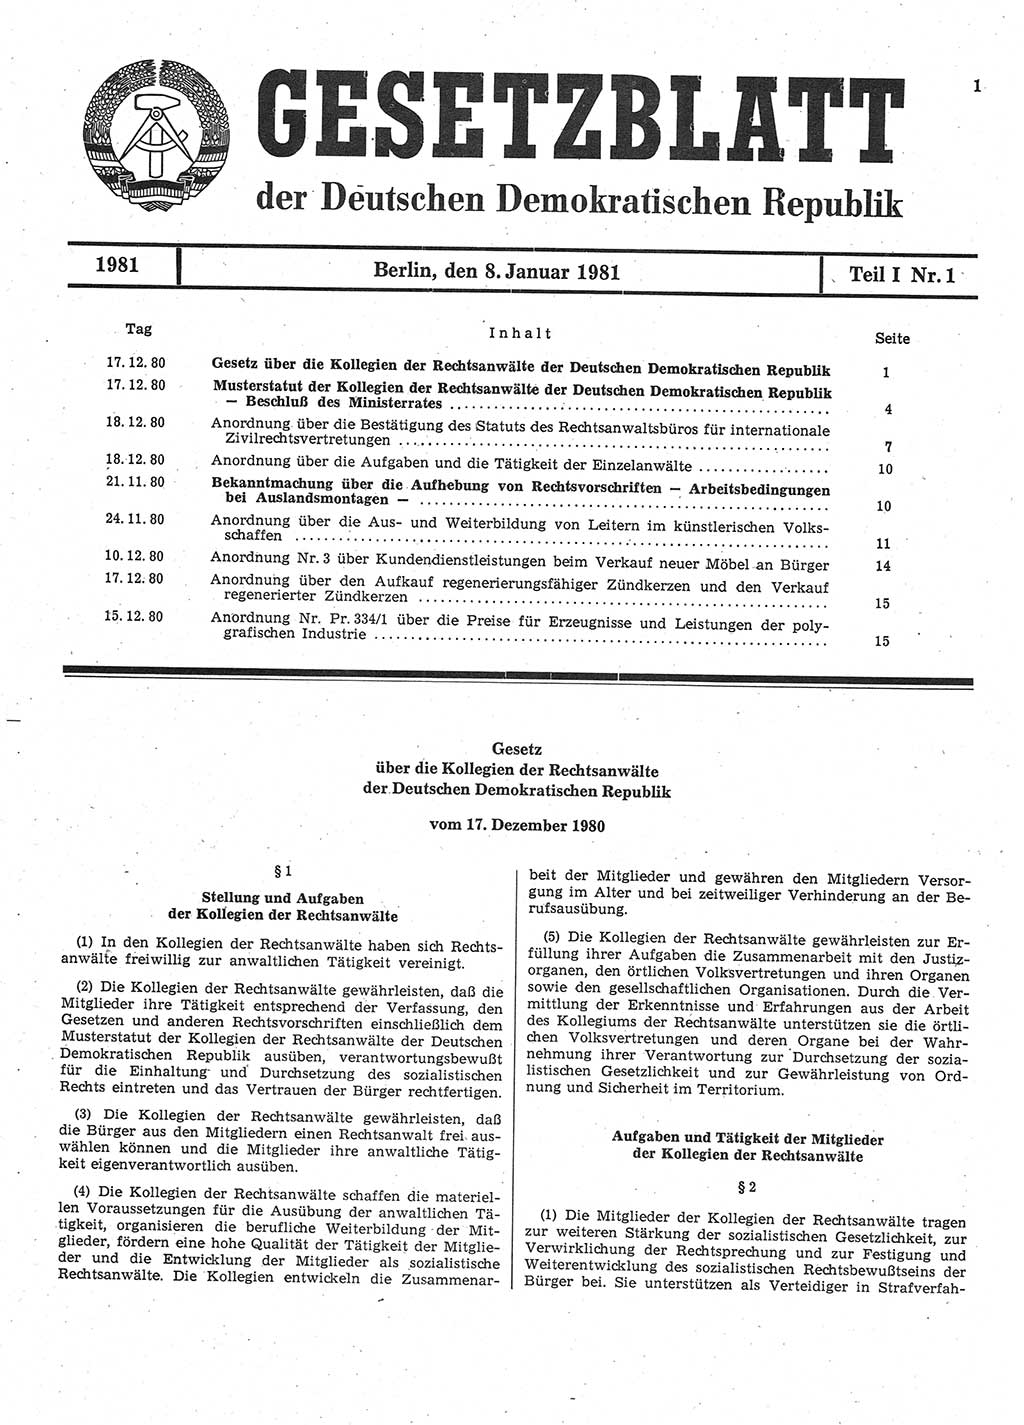 Gesetzblatt (GBl.) der Deutschen Demokratischen Republik (DDR) Teil Ⅰ 1981, Seite 1 (GBl. DDR Ⅰ 1981, S. 1)